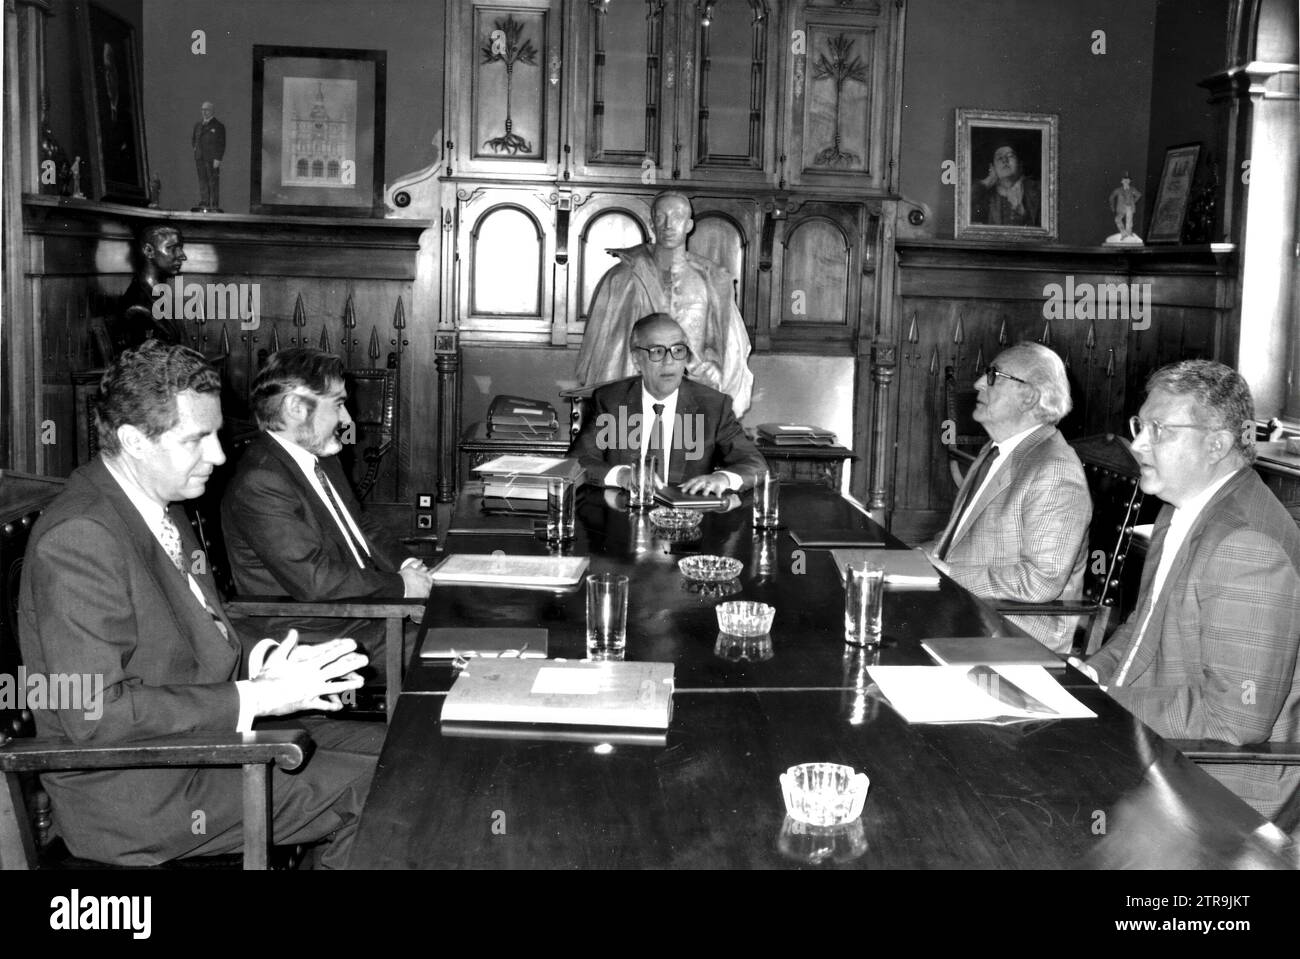 05/07/1992. Jury Meeting. From left to right, Jaime de Carvajal y Urquijo, Darío Villanueva, Leopoldo Calvo Sotelo, Antonio Mingote and Juan José Armas Marcelo. Credit: Album / Archivo ABC / José García Stock Photo